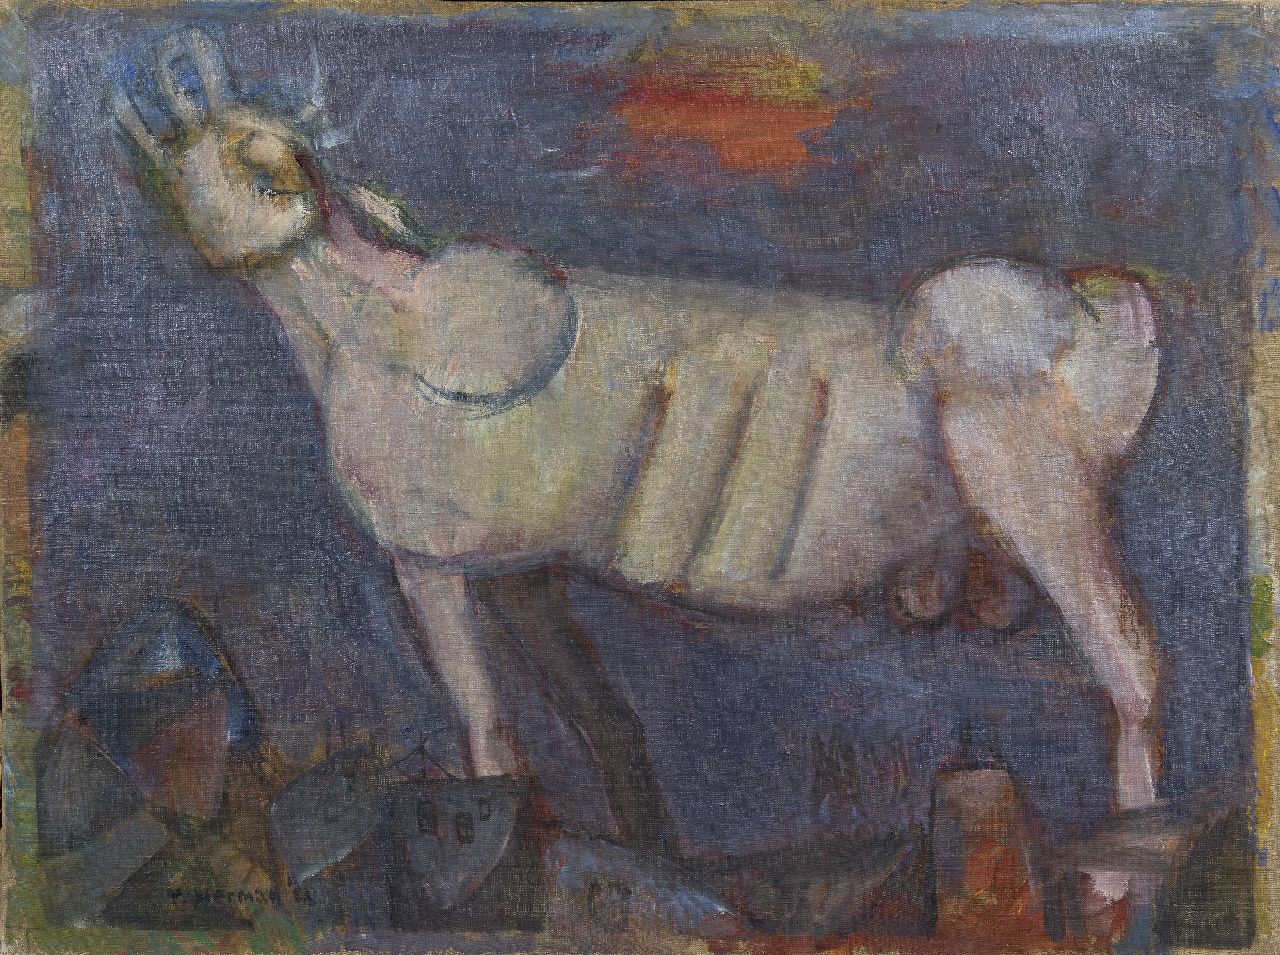 Rudi Bierman | Brullende stier, olieverf op doek, 60,5 x 80,5 cm, gesigneerd l.o. + verso en gedateerd '52